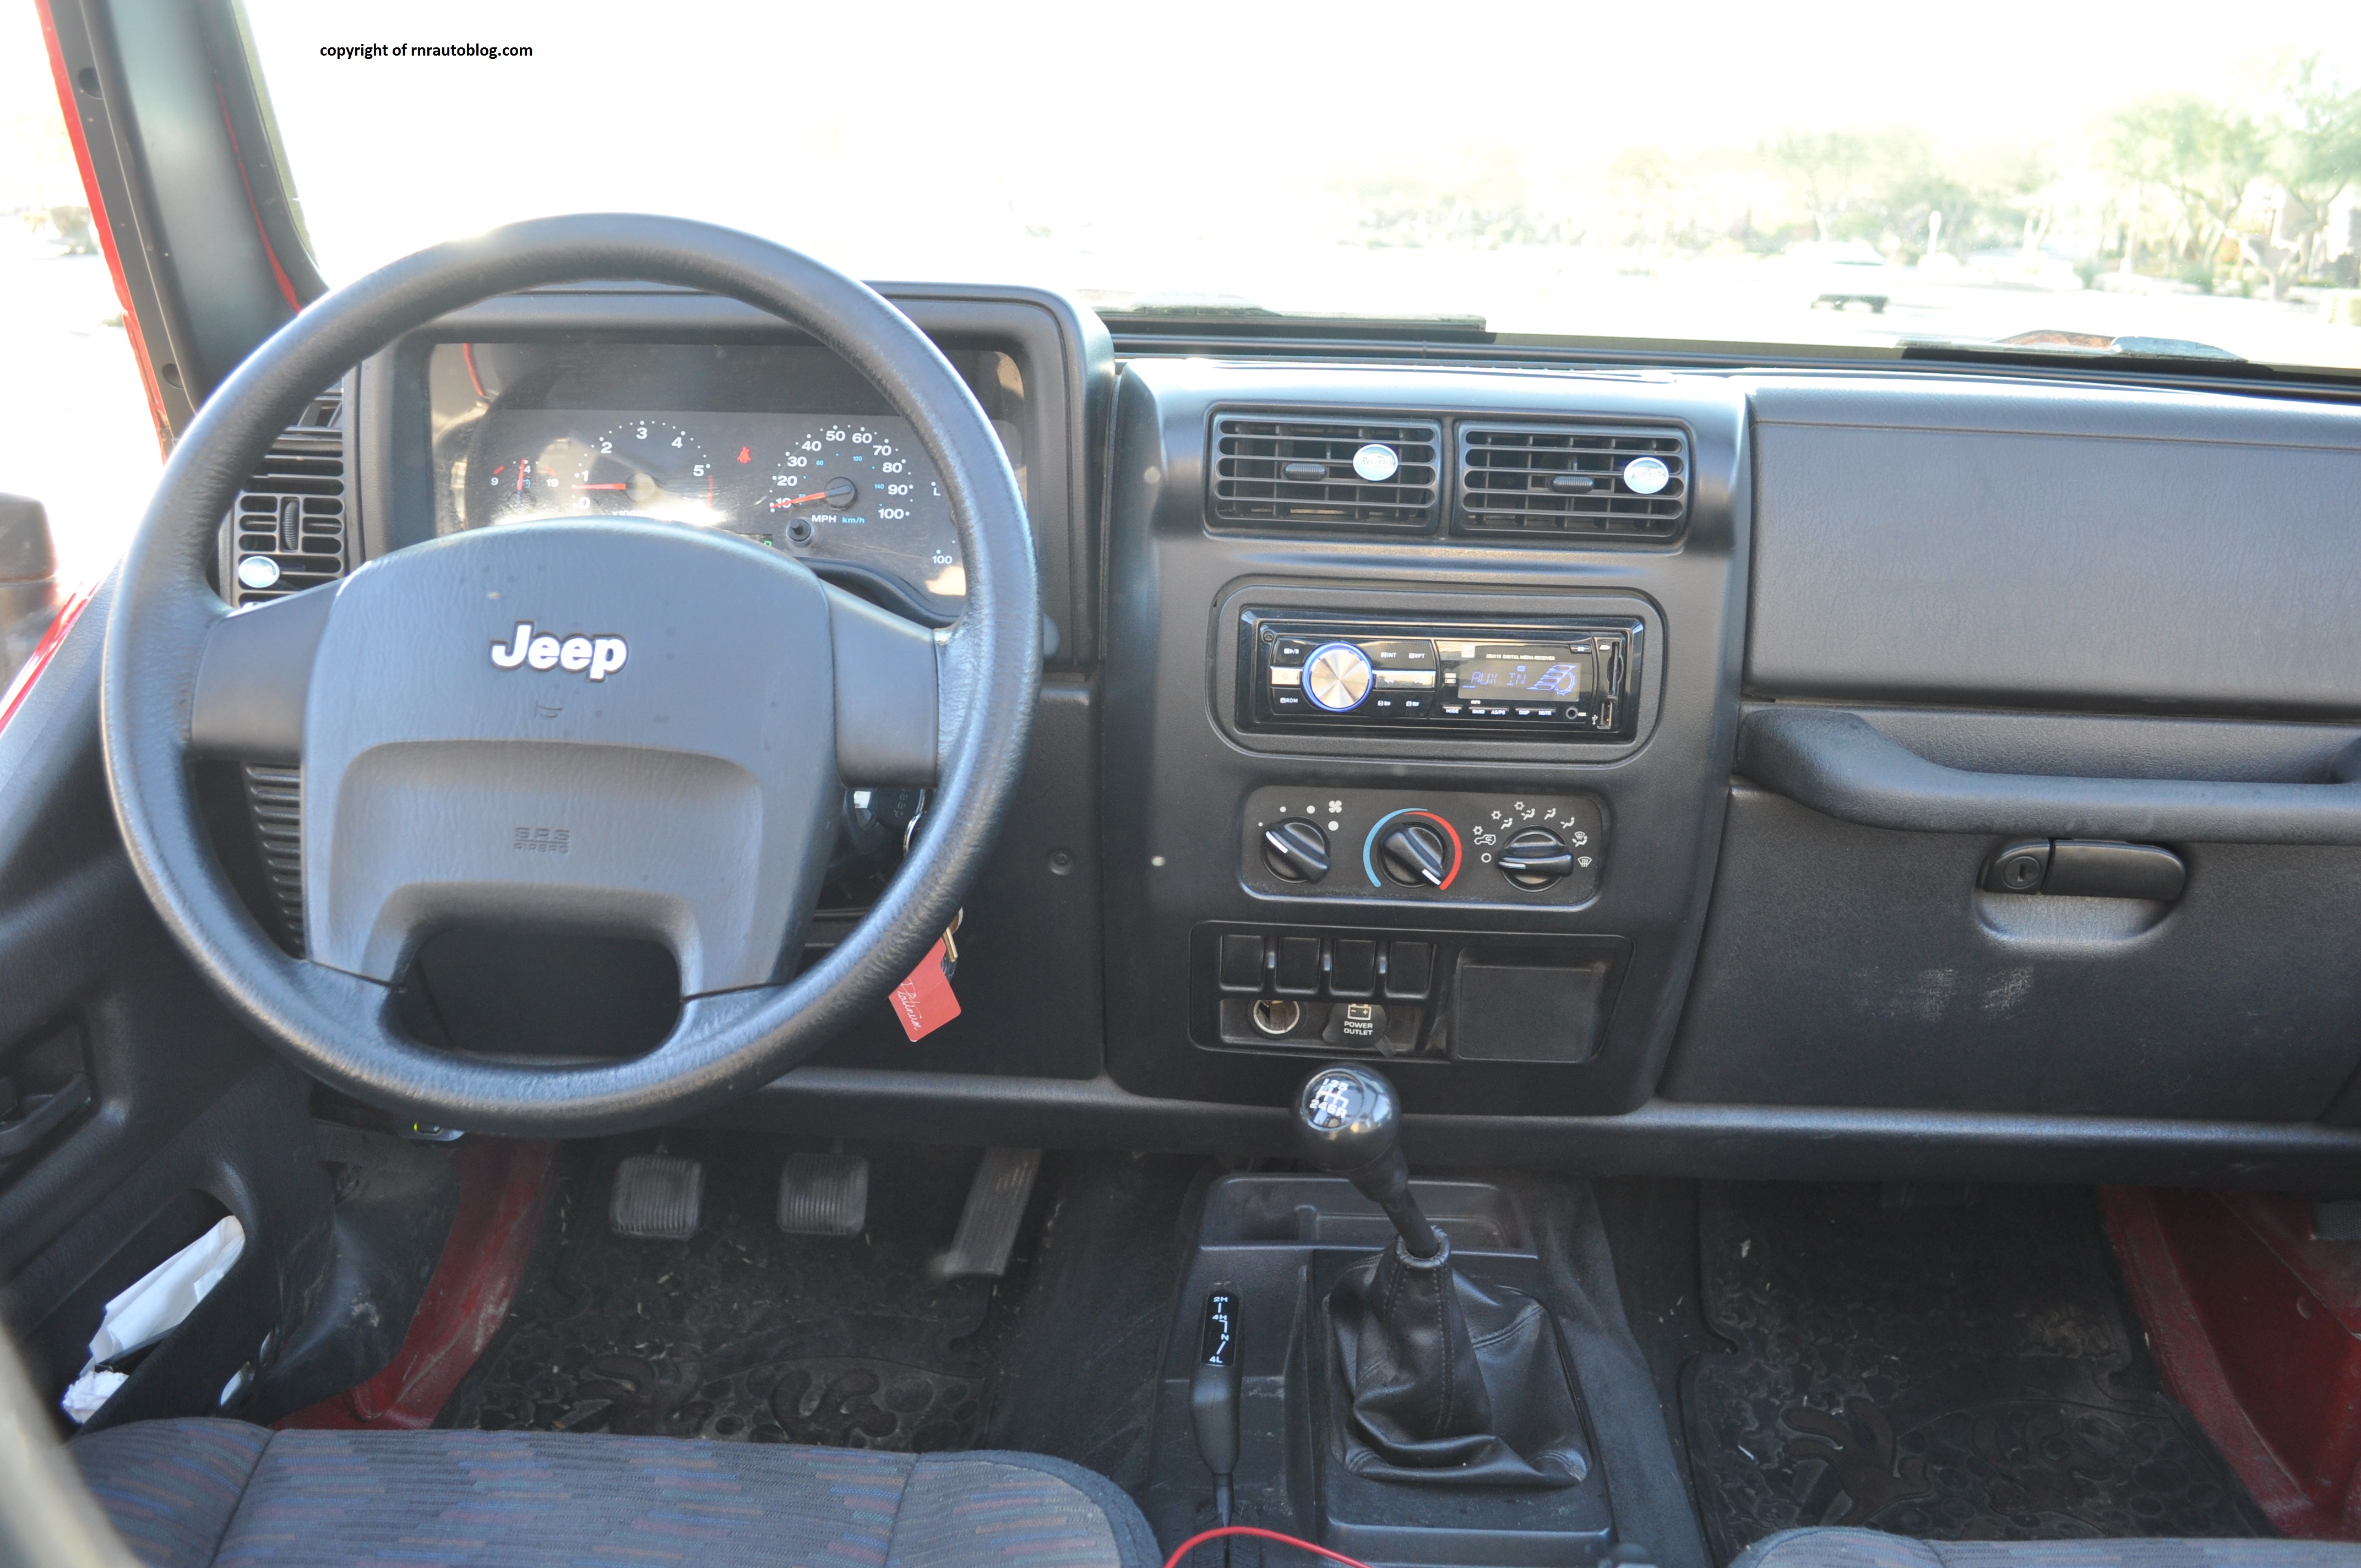 2005 Jeep Wrangler Interior Growswedes Com